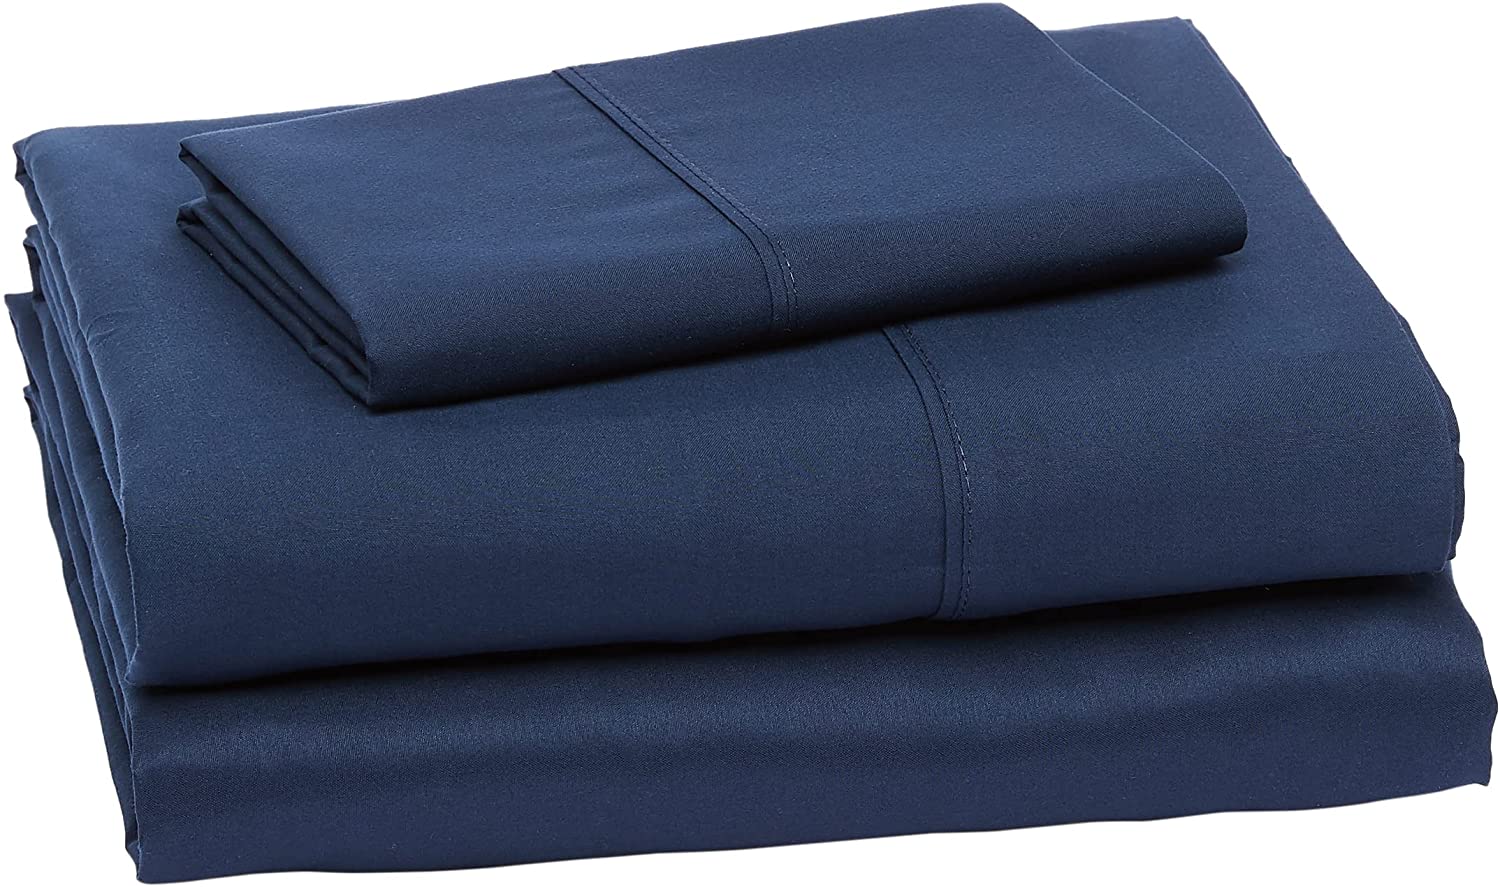 AmazonBasics Lightweight OEKO-TEX Standard Cheap Bed Sheets, 3-Piece